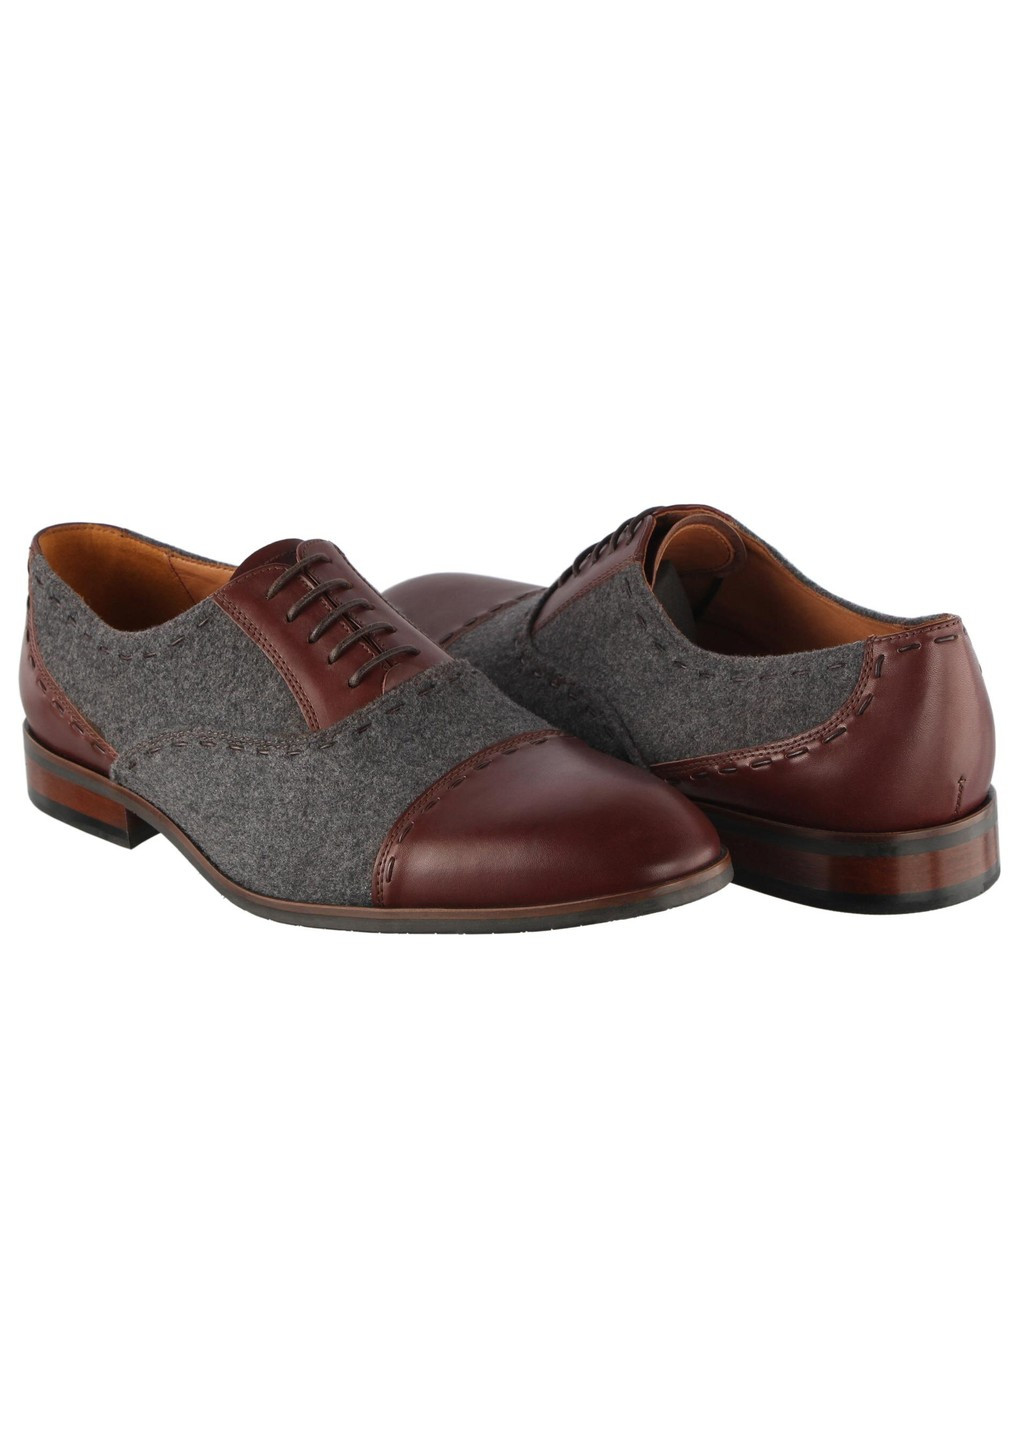 Коричневые мужские классические туфли 6064 Conhpol на шнурках